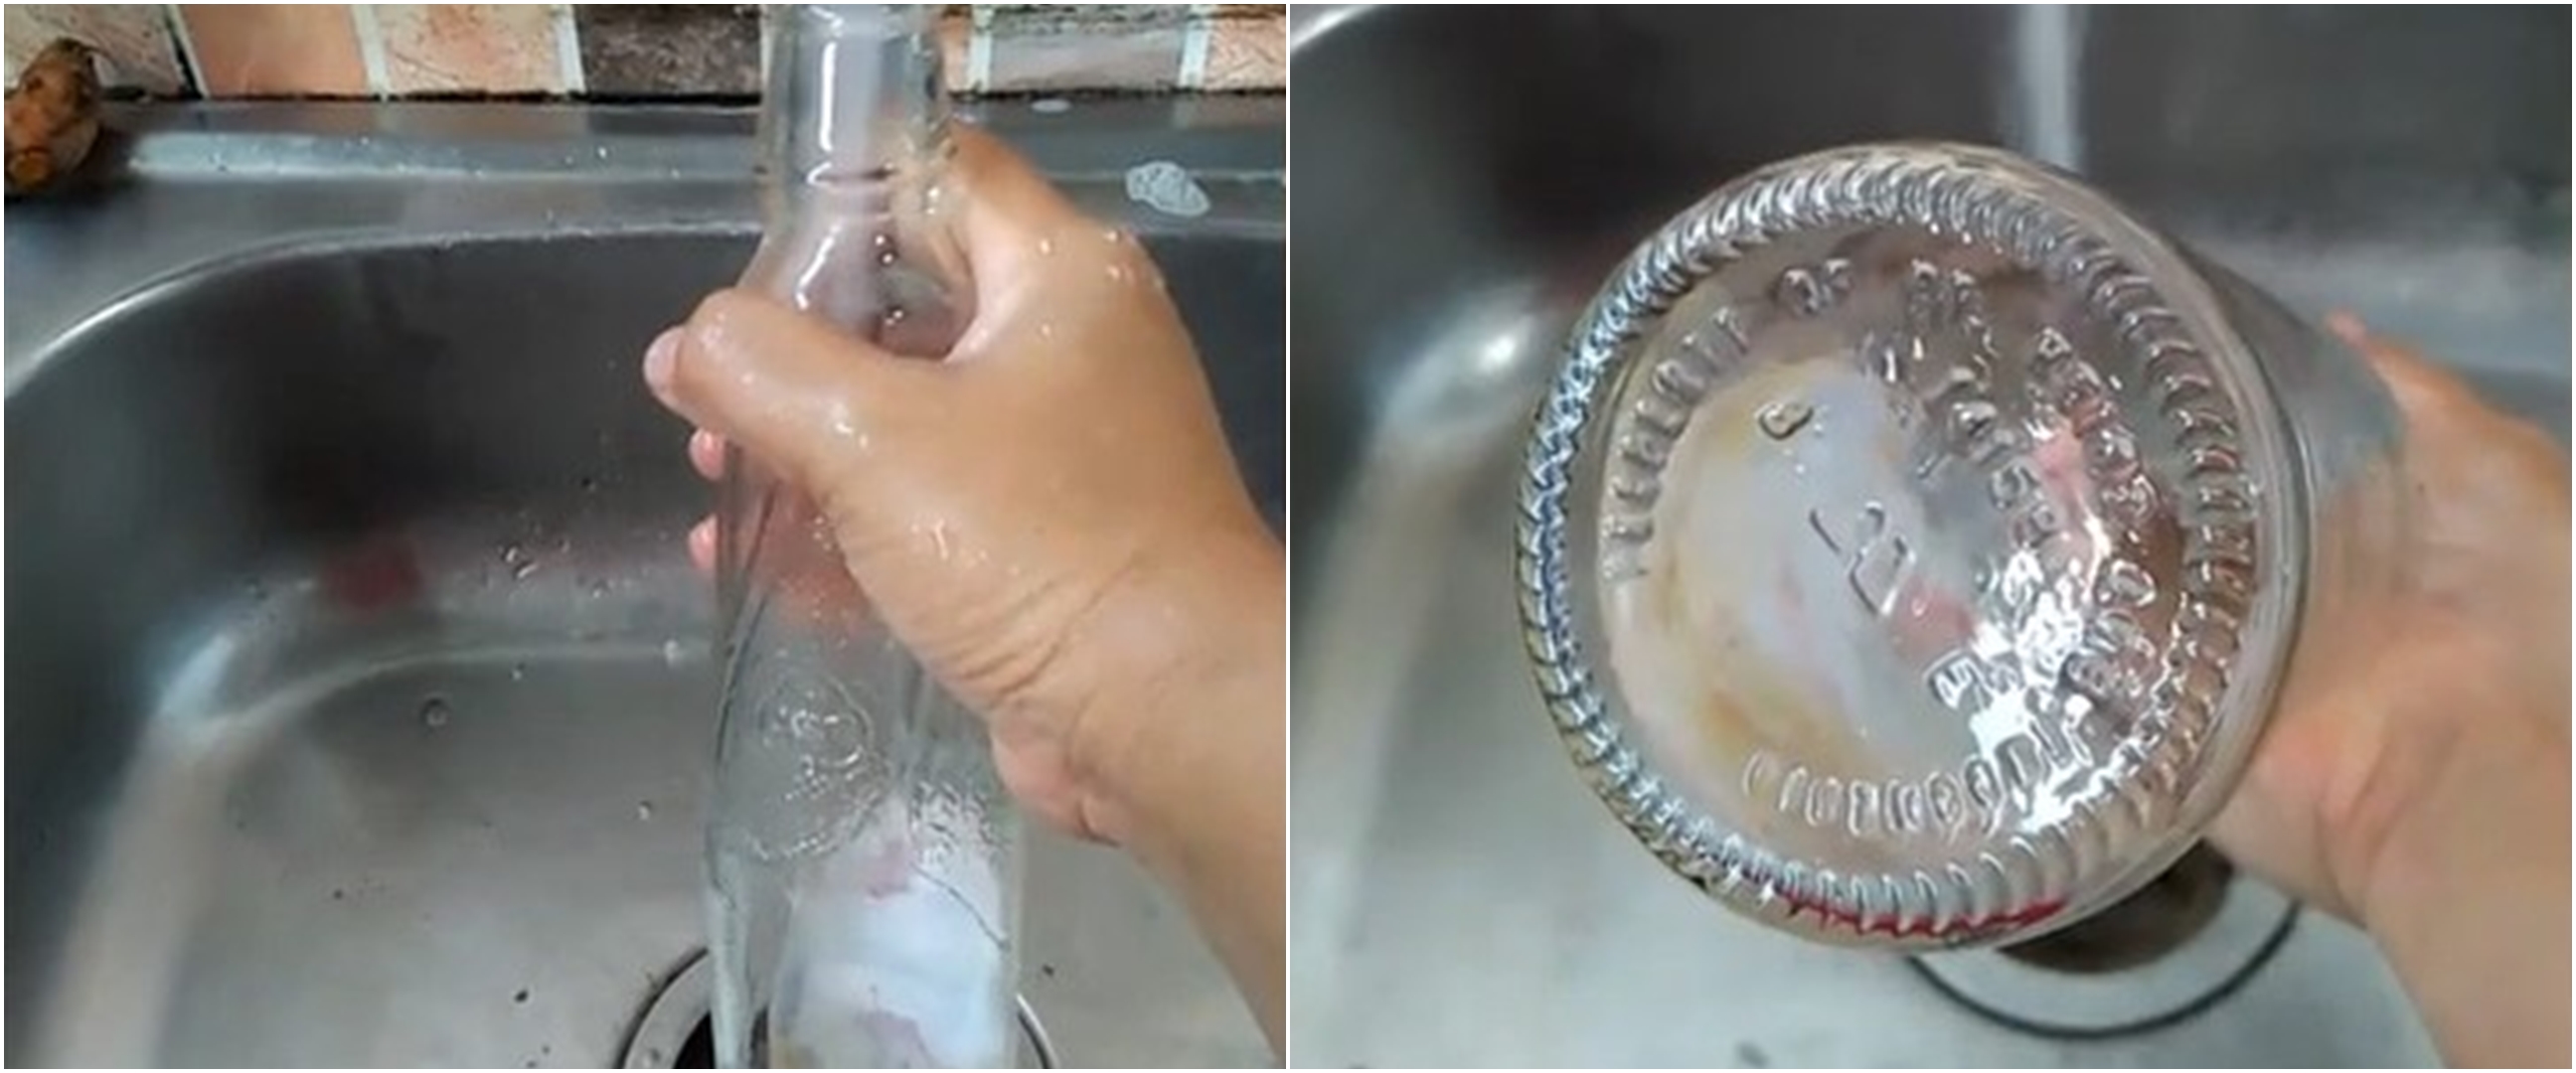 Tanpa sikat, begini trik membersihkan botol kaca bekas sirup